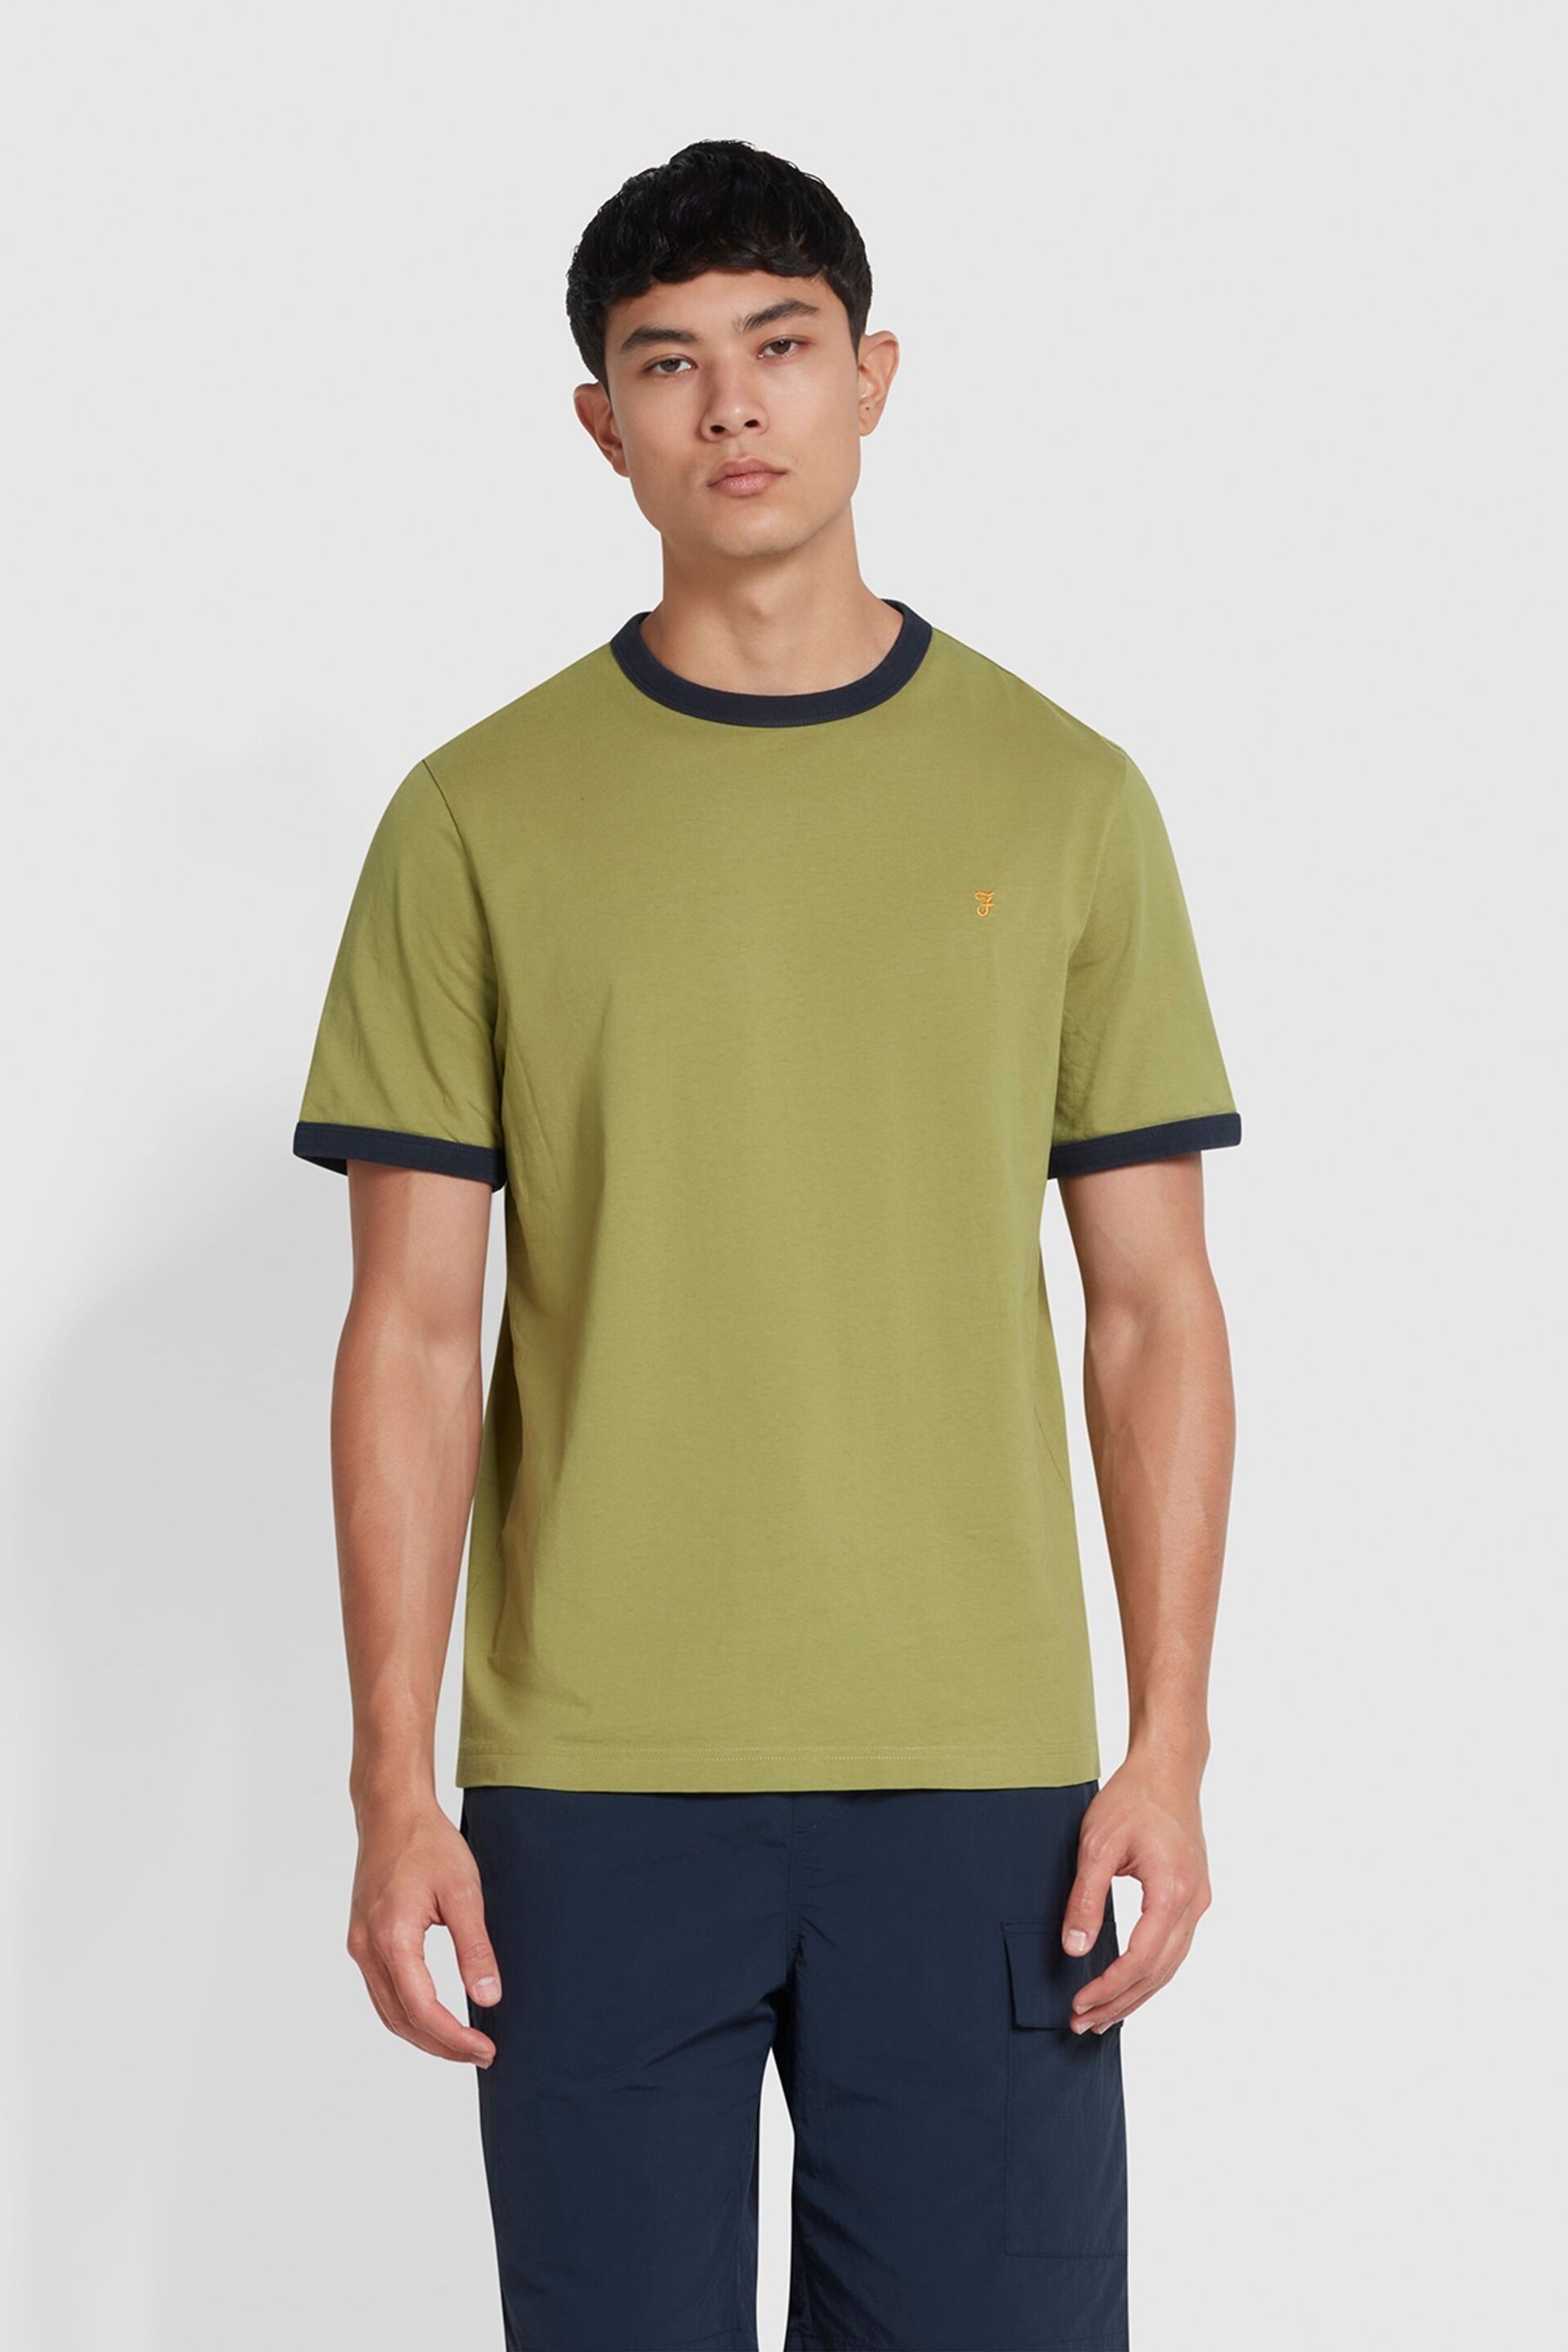 Farah Groves Ringer Short Sleeve T-Shirt - Image 1 of 5